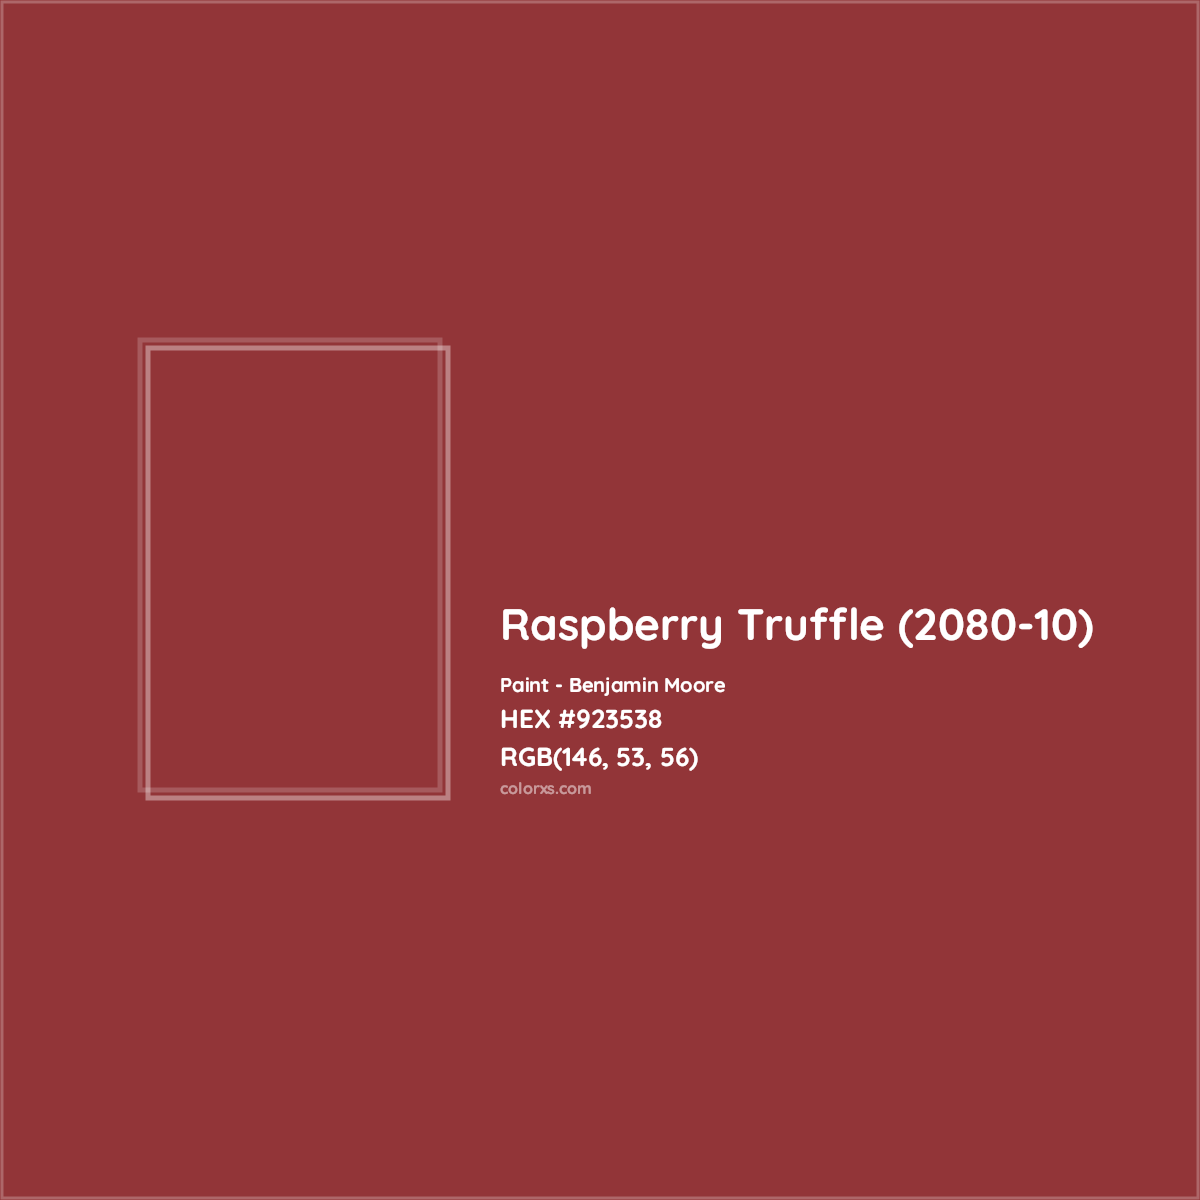 HEX #923538 Raspberry Truffle (2080-10) Paint Benjamin Moore - Color Code